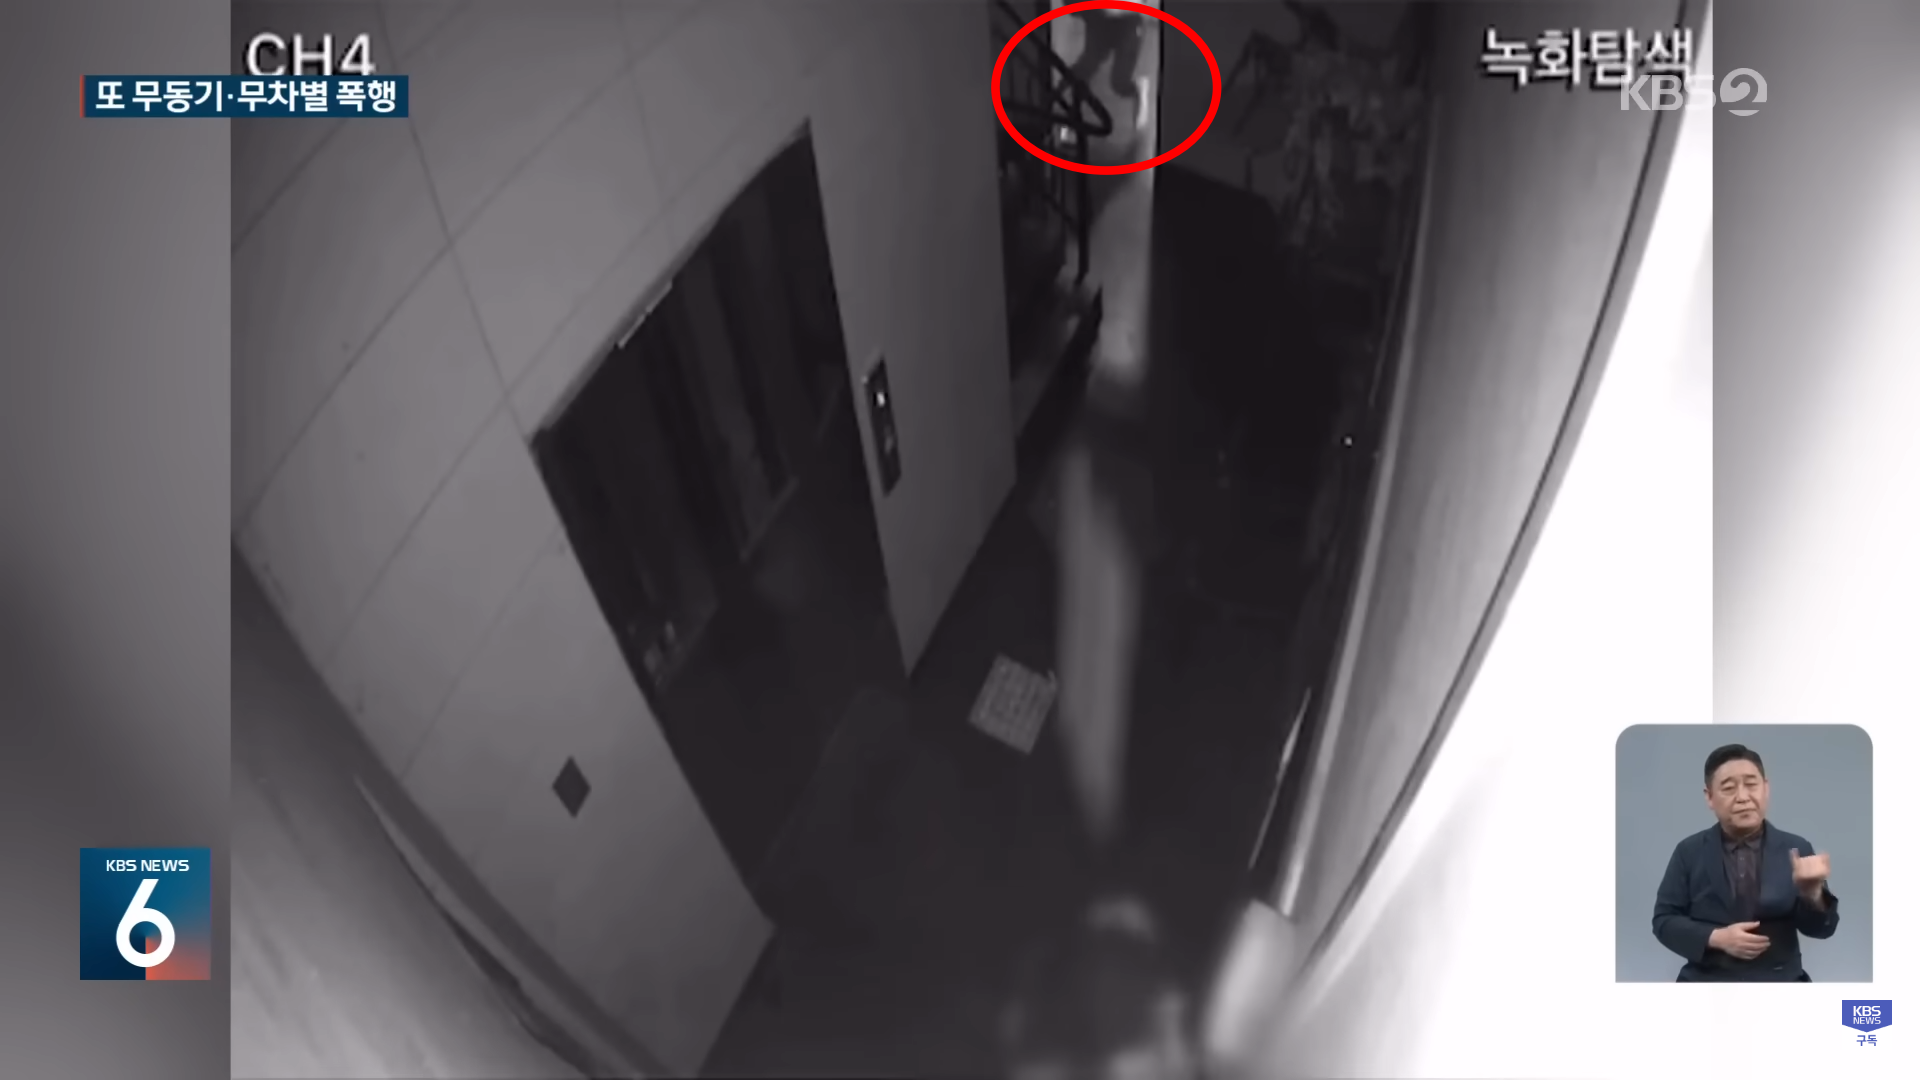 30대 남성(붉은 원)이 술에 취해 일면식이 없는 여성에게 세제통을 던지는 장면. KBS 보도화면 캡처